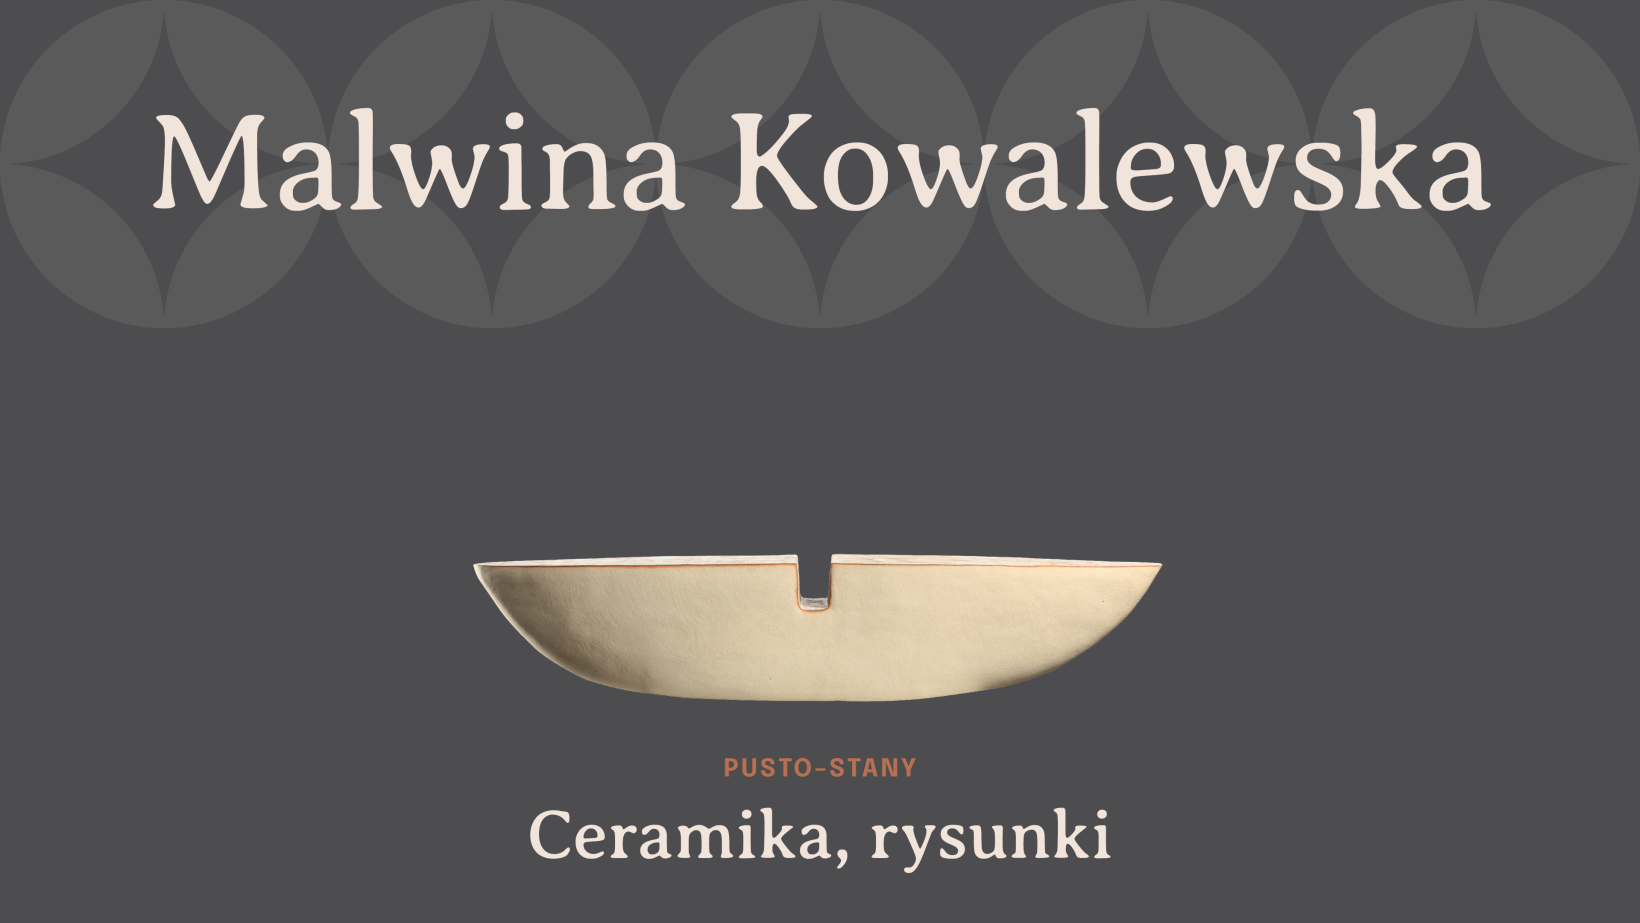 grafika, szare tło, napis "Malwina Kowalewska" zdjęcie ceramicznej rzeźby